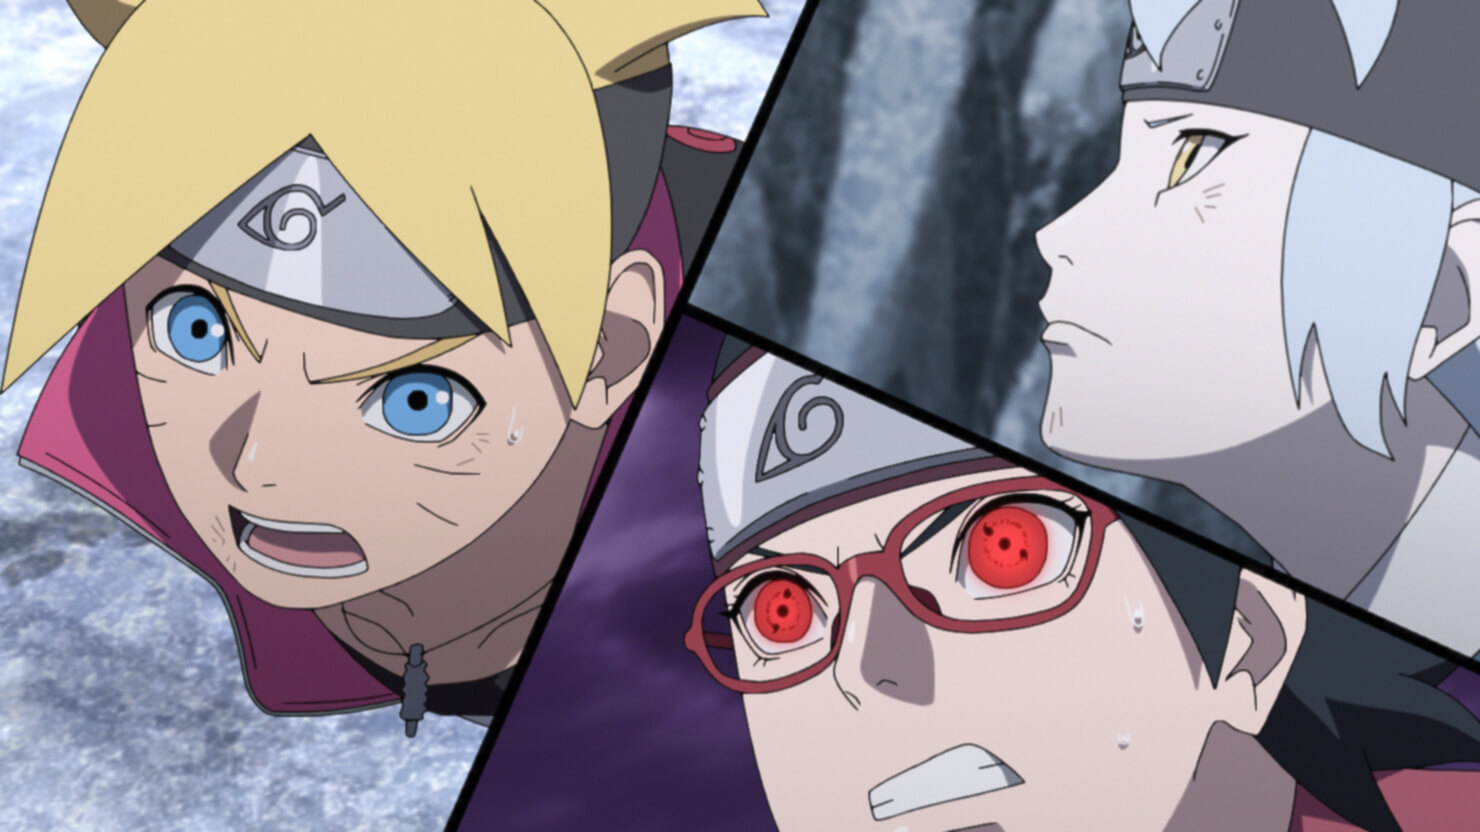 Análise do episódio 207 de Boruto - Naruto Next Generations